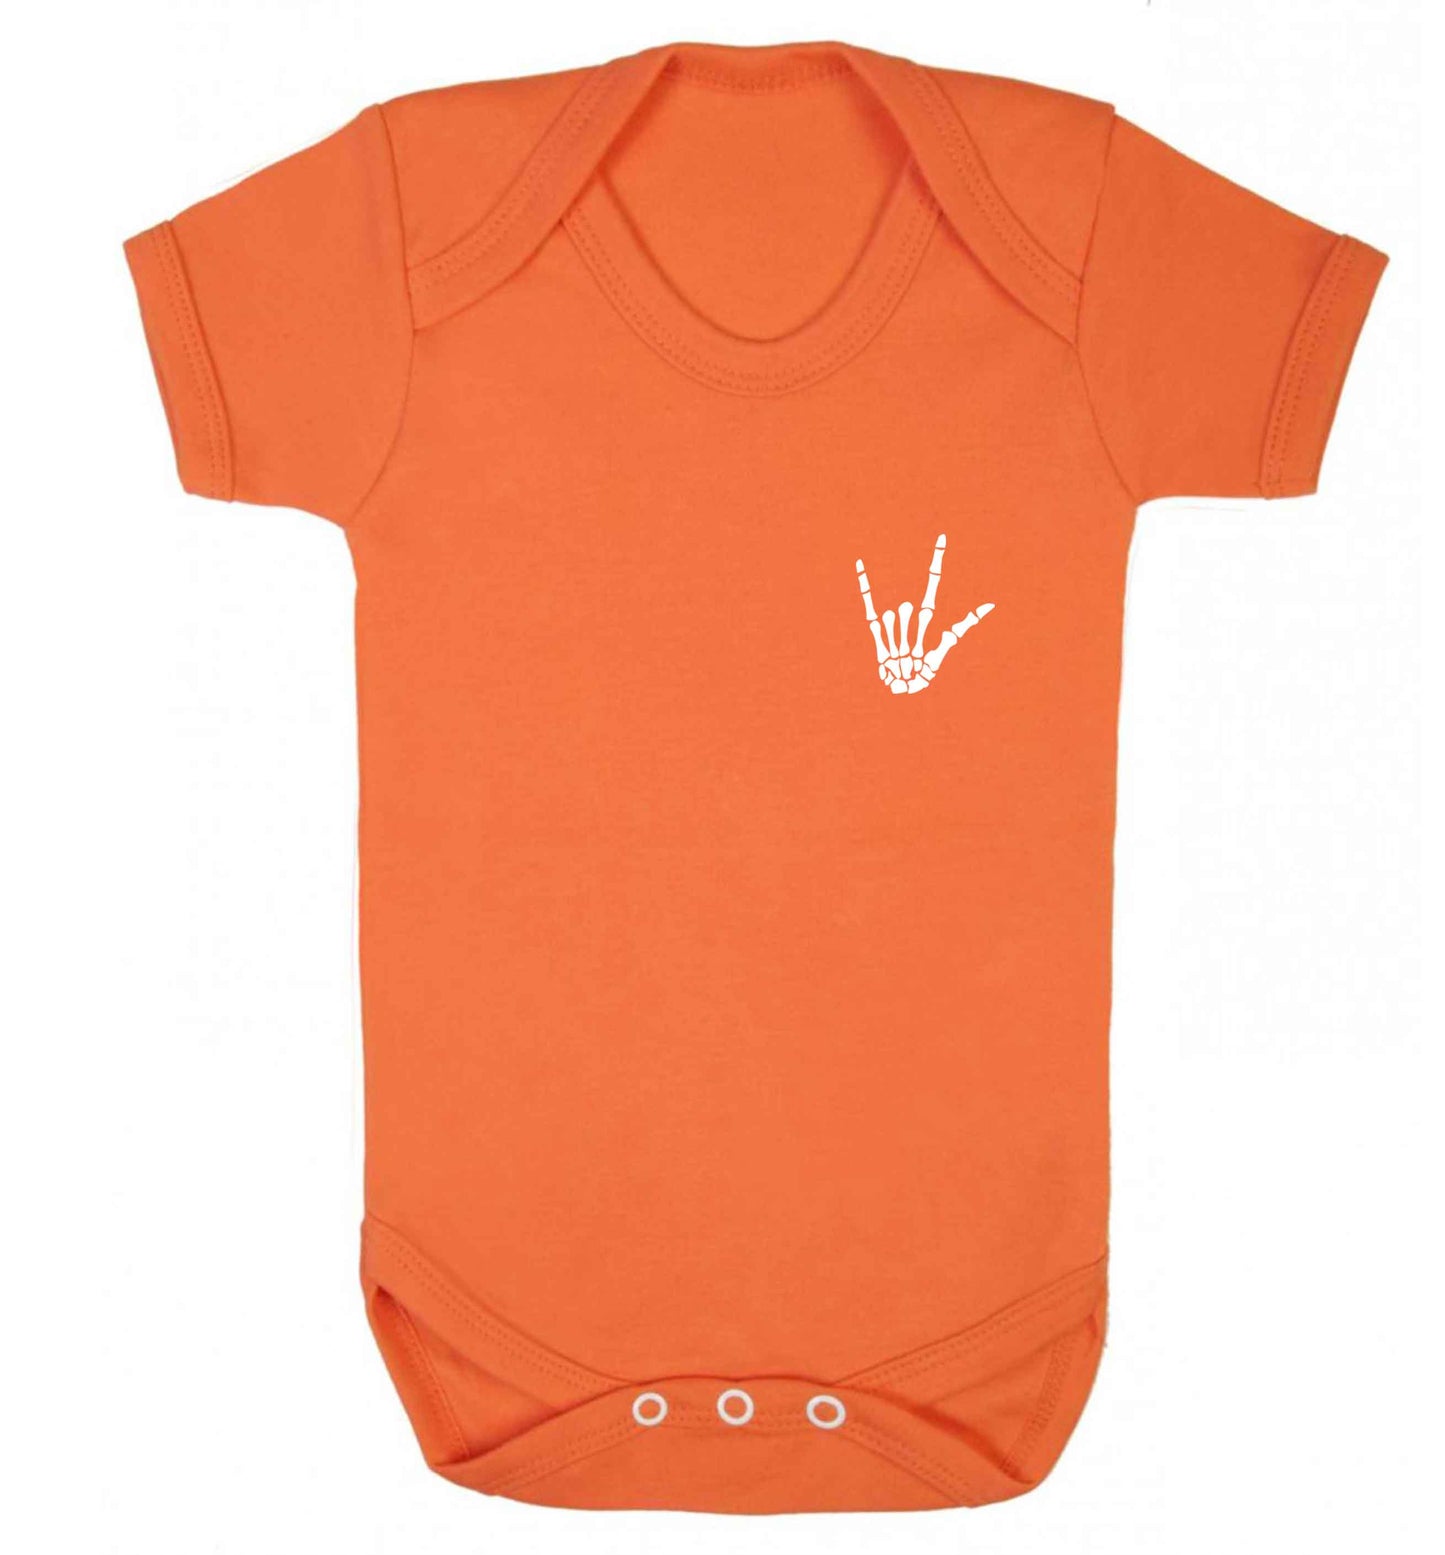 Skeleton Hand Pocket baby vest orange 18-24 months